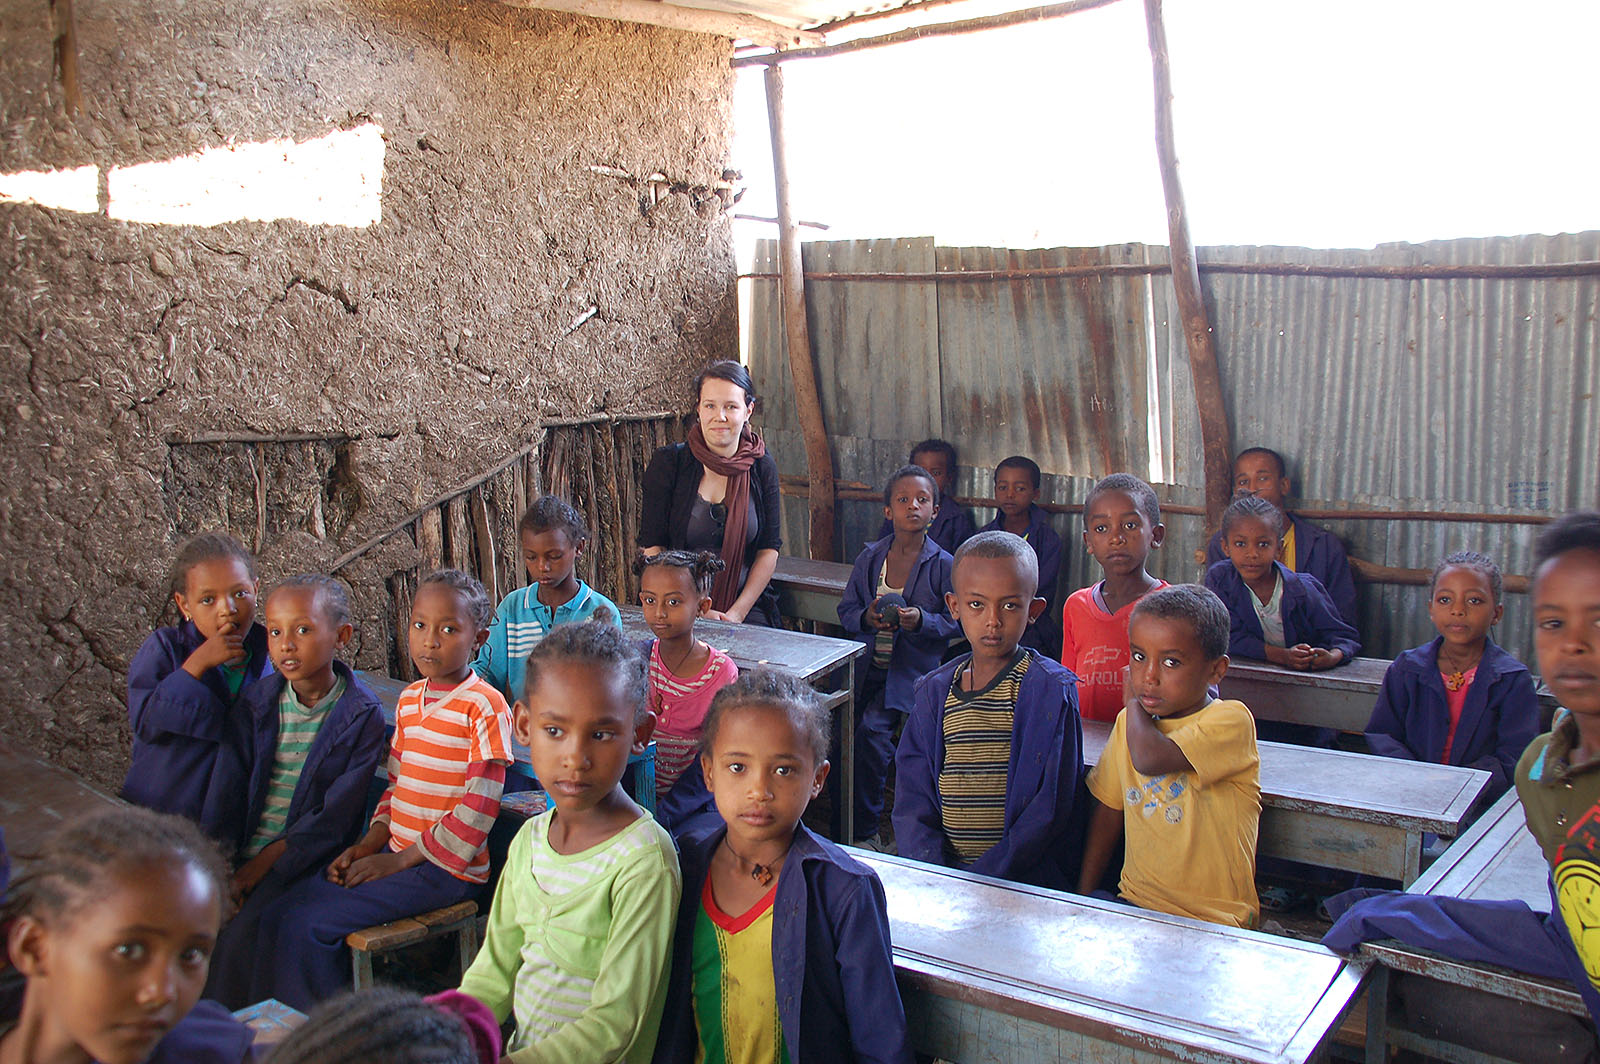 Nainen istuu etiopialaisen luokan takana